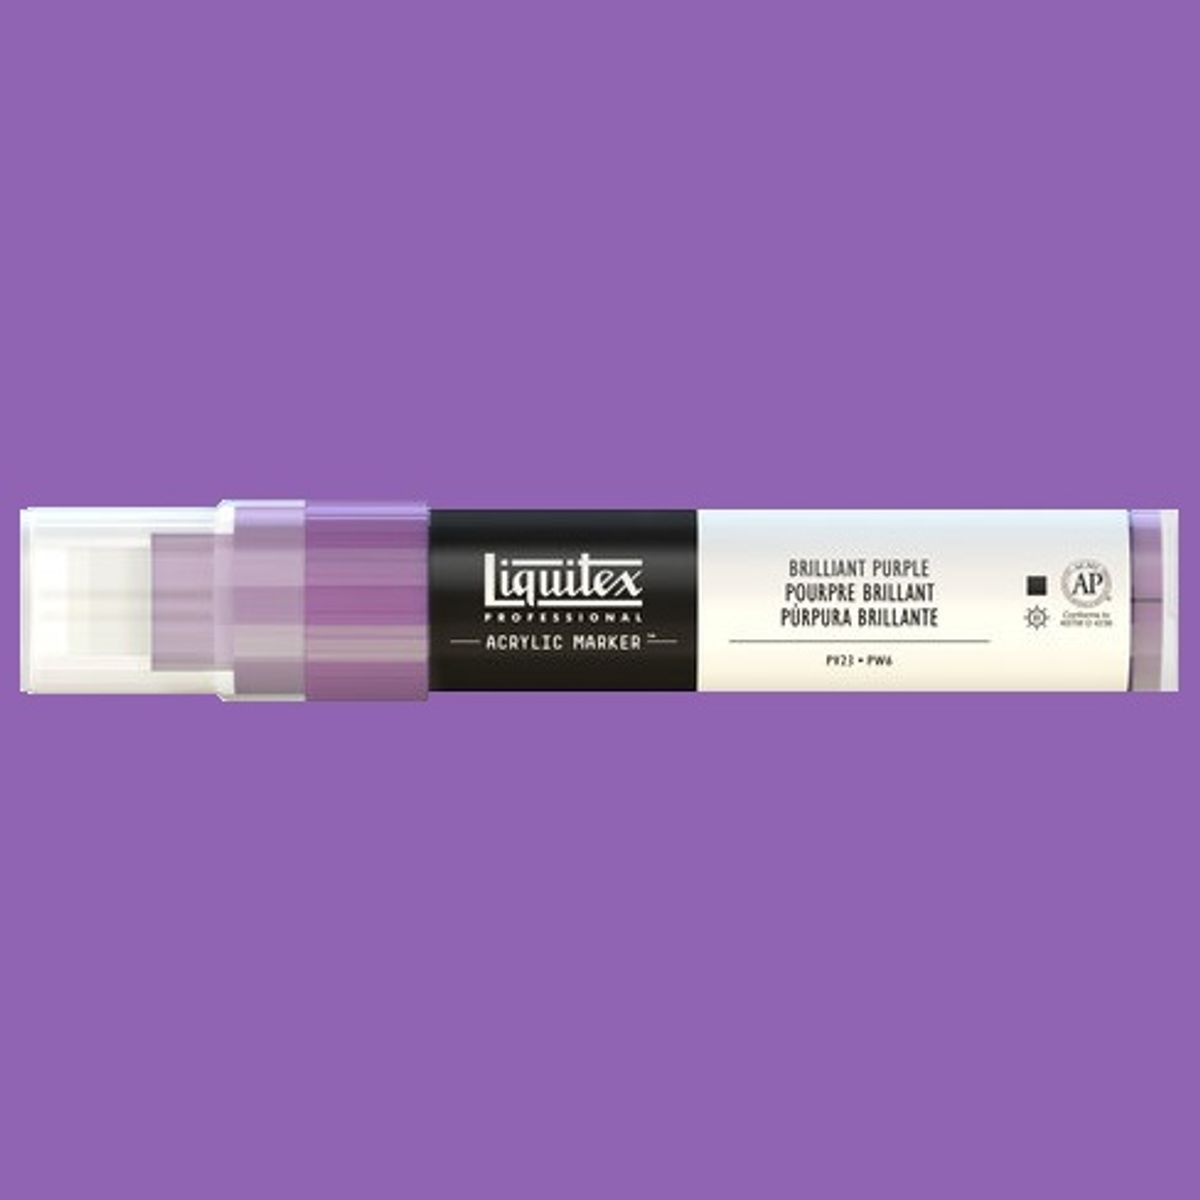 Liquitex Acrylic Marker - Violet.jpg